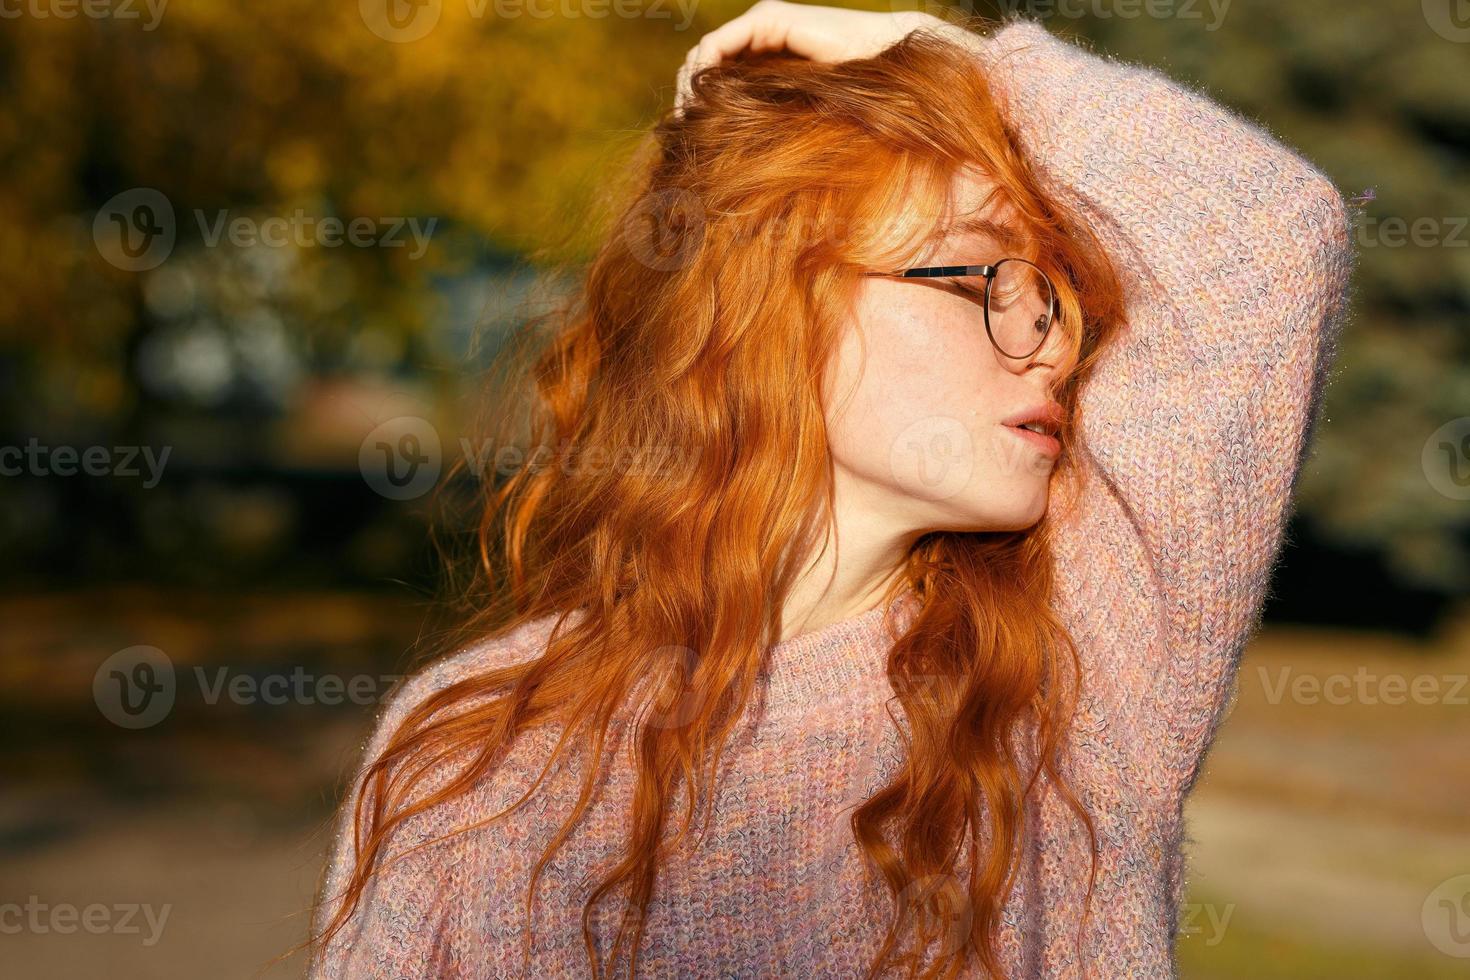 retratos de una encantadora chica pelirroja con gafas y cara linda. chica posando en el parque de otoño con un suéter y una falda de color coral. la niña tiene un estado de ánimo maravilloso foto